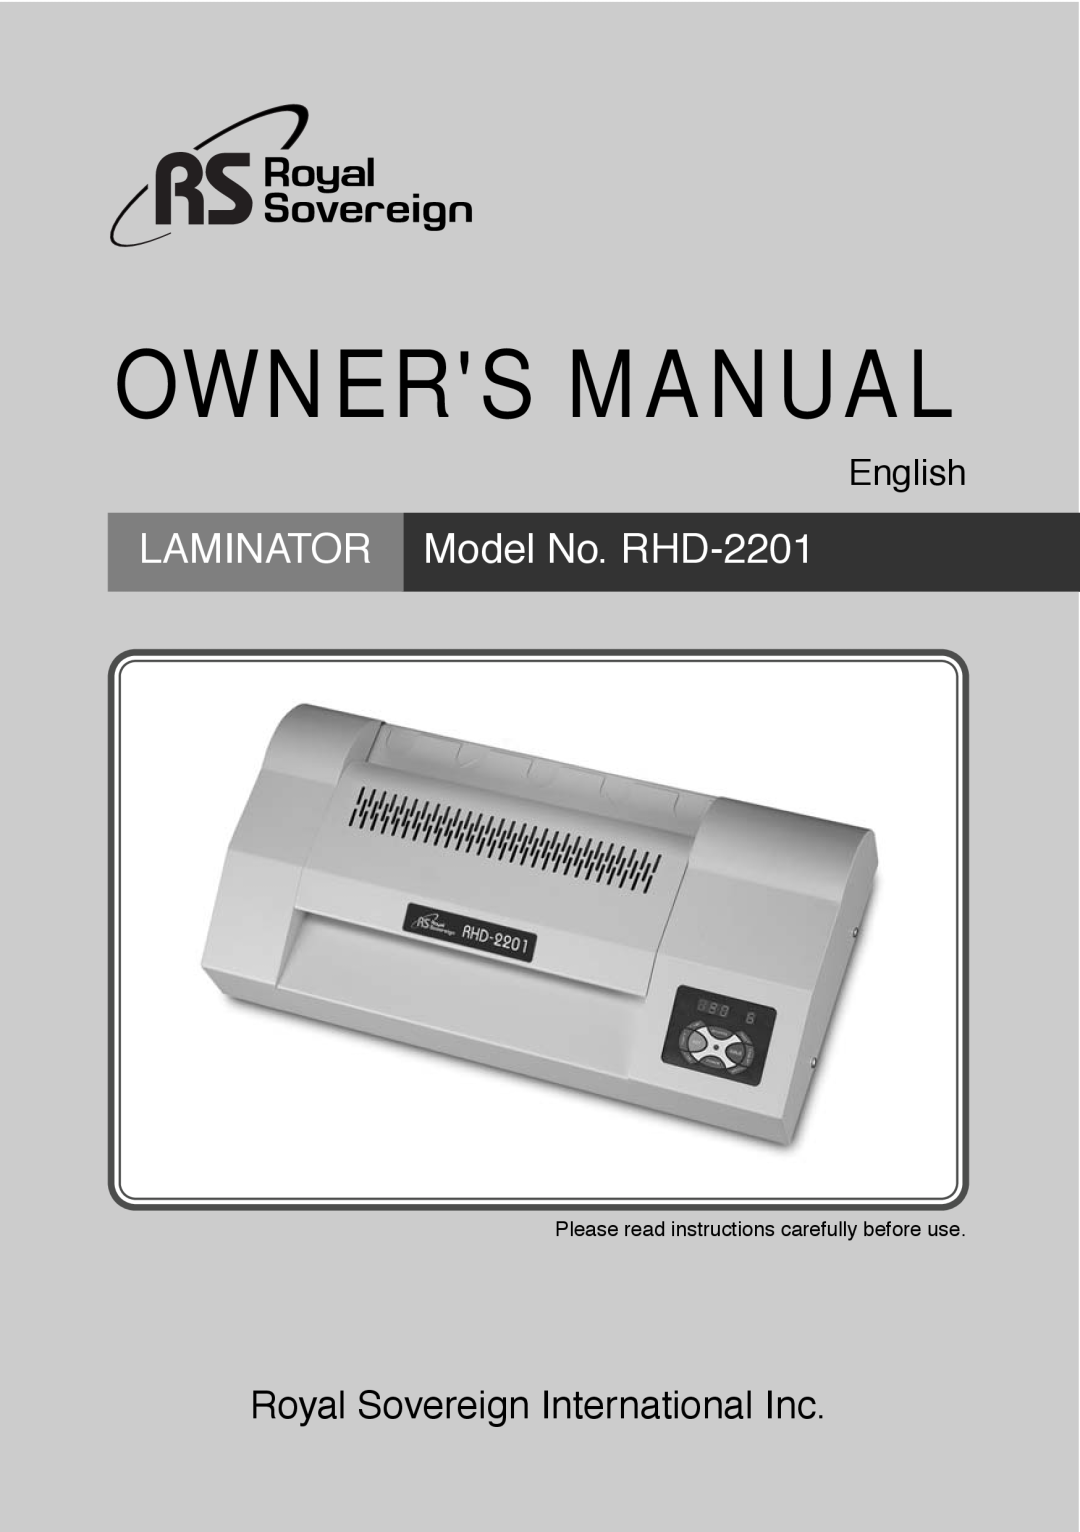 Royal Sovereign owner manual Owners Manual, LAMINATOR Model No. RHD-2201, Royal Sovereign International Inc, English 